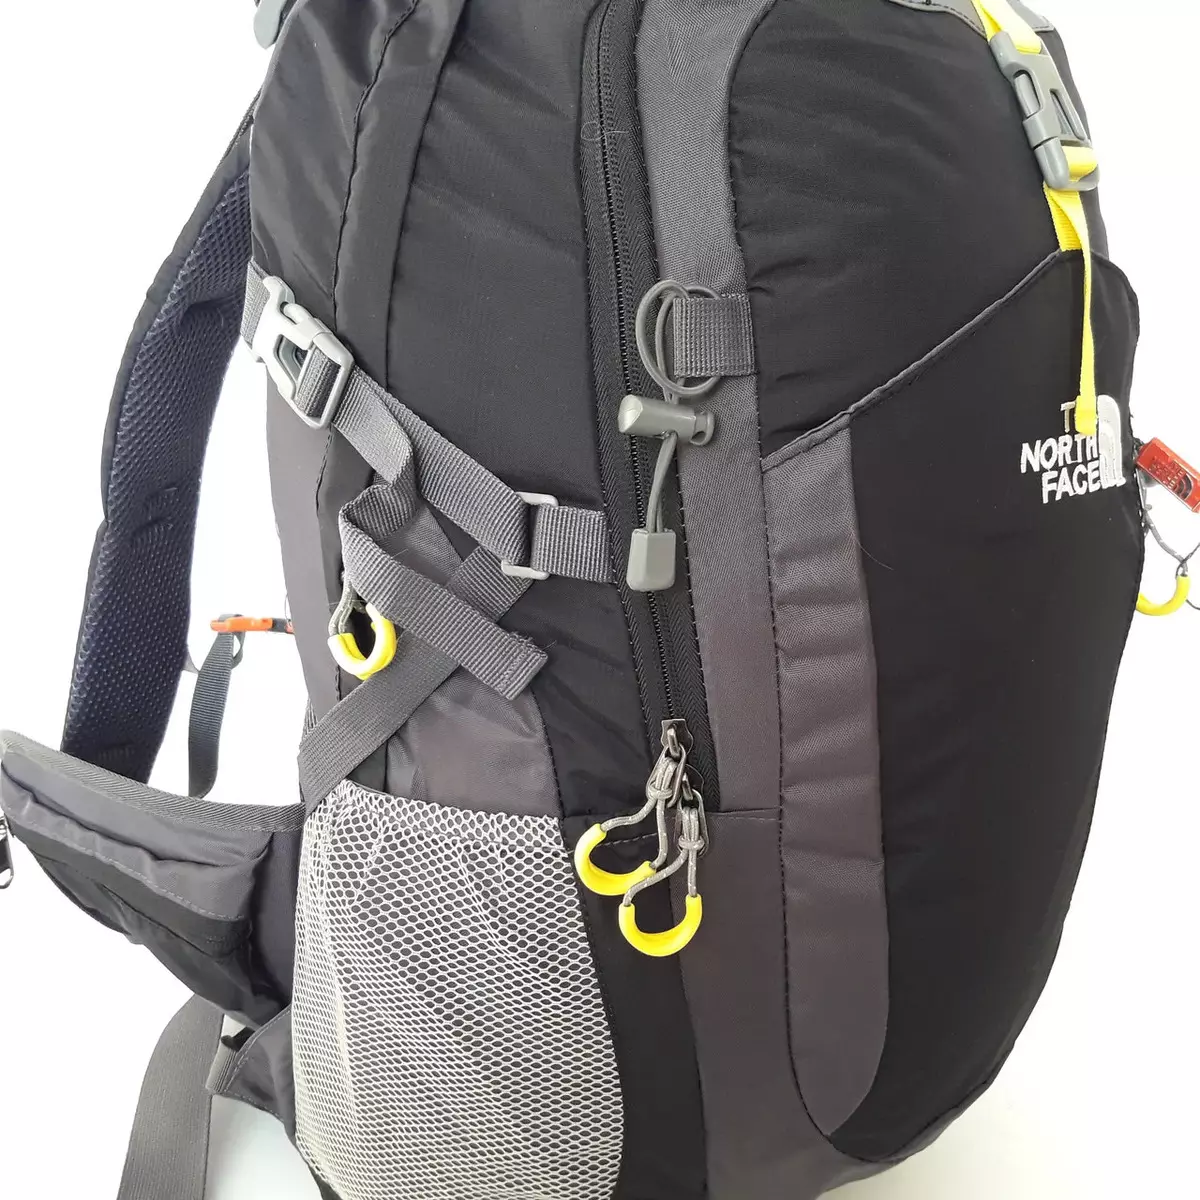 Backpacks ჩრდილოეთ სახე: Backpacks- ჩანთები და ურბანული ზურგჩანთები, ყვითელი და შავი მოდელები, მწვანე და ლურჯი, წითელი და სხვა 15407_4